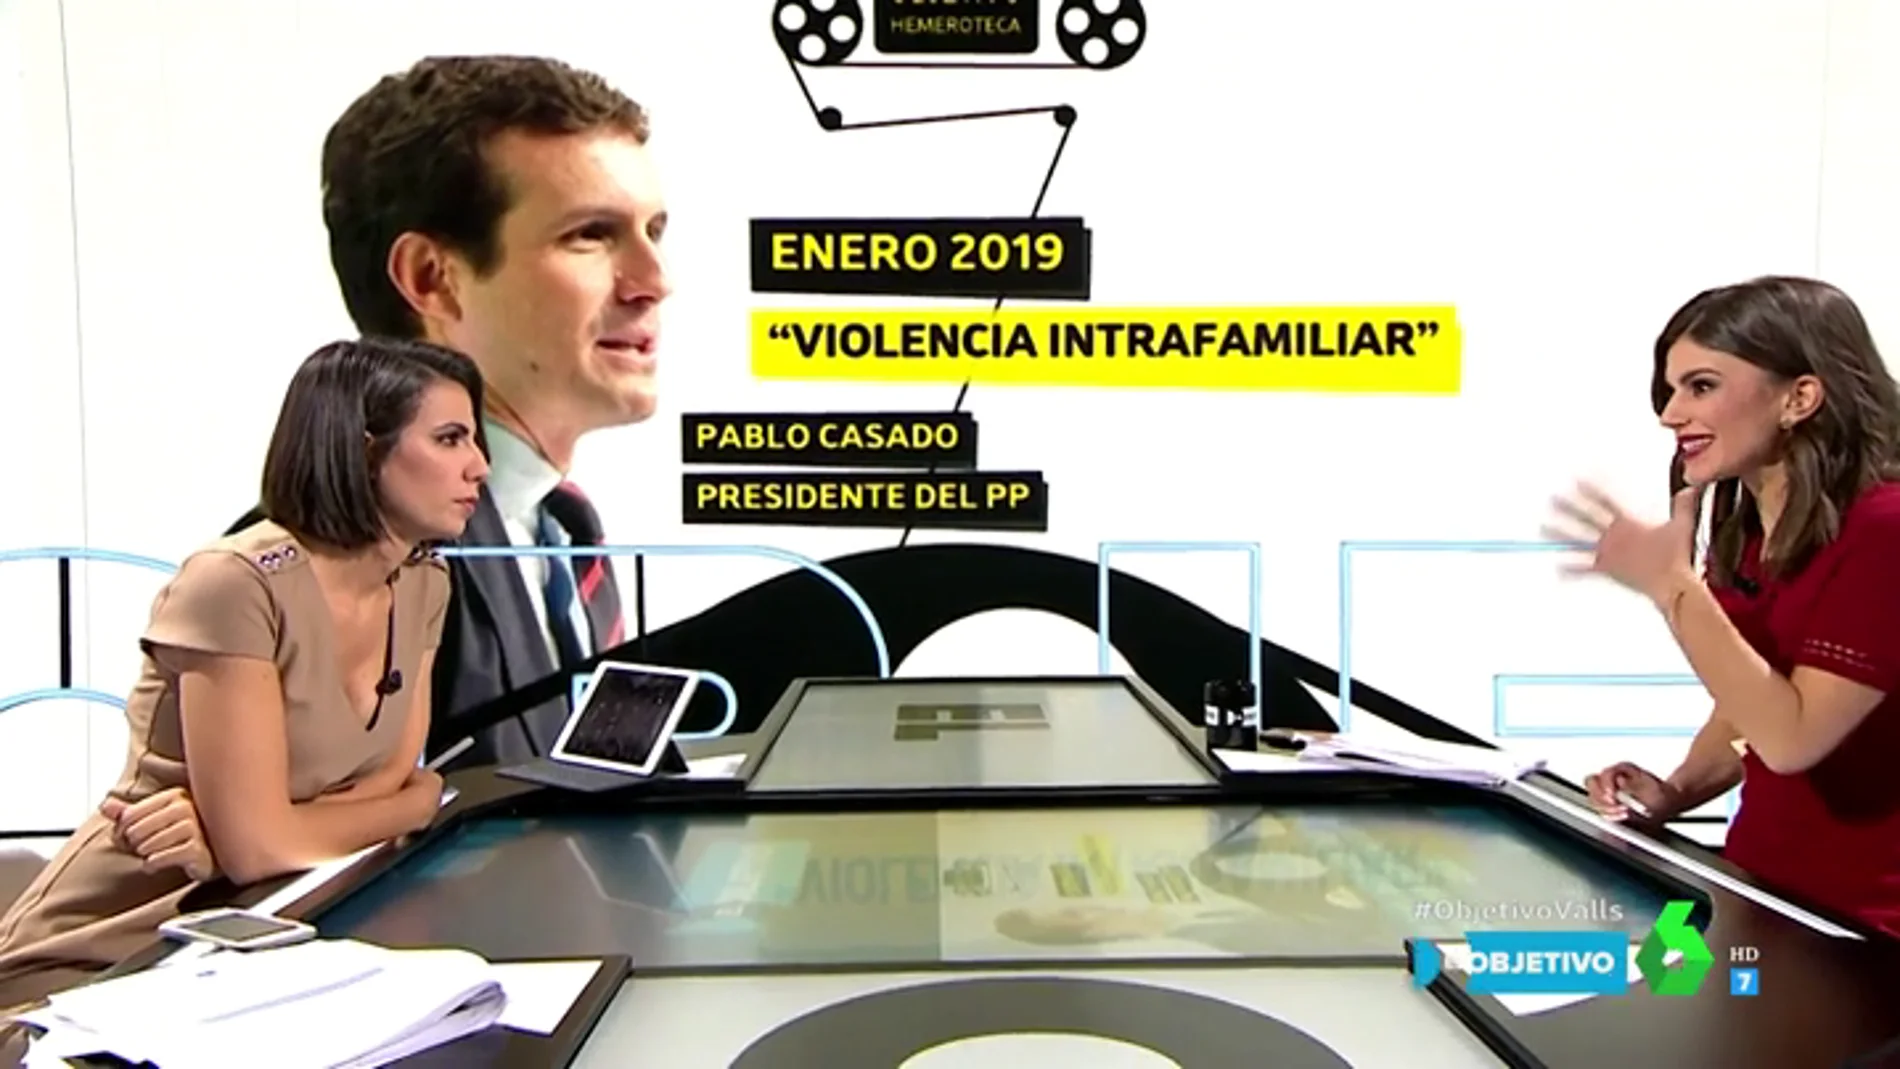 Hemeroteca sobre el término 'violencia intrafamiliar' al que se refiere Pablo Casado